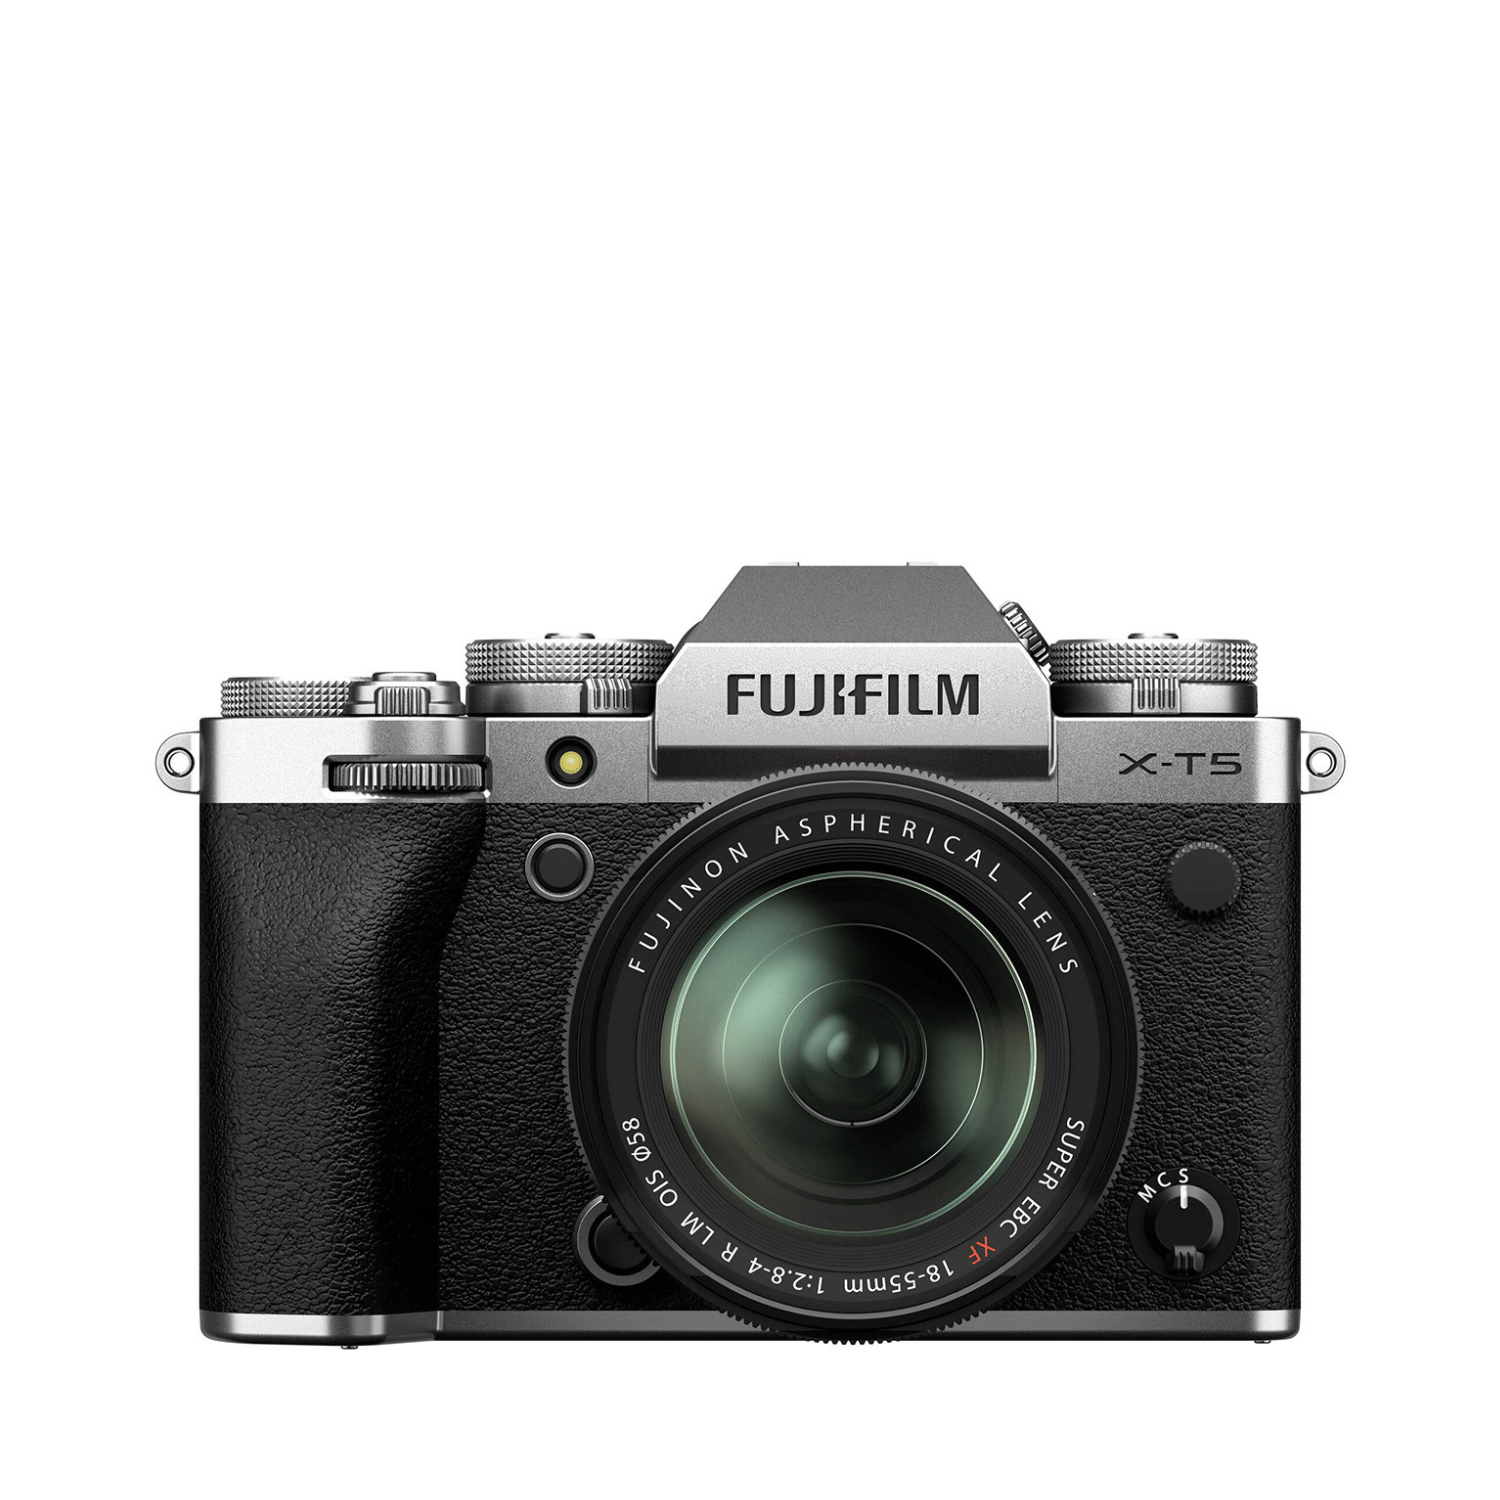 Fujifilm X-T5 + 18-55mm F2.8 R LM WR - Garanzia Fujifilm Italia - Cine Sud è da 48 anni sul mercato!